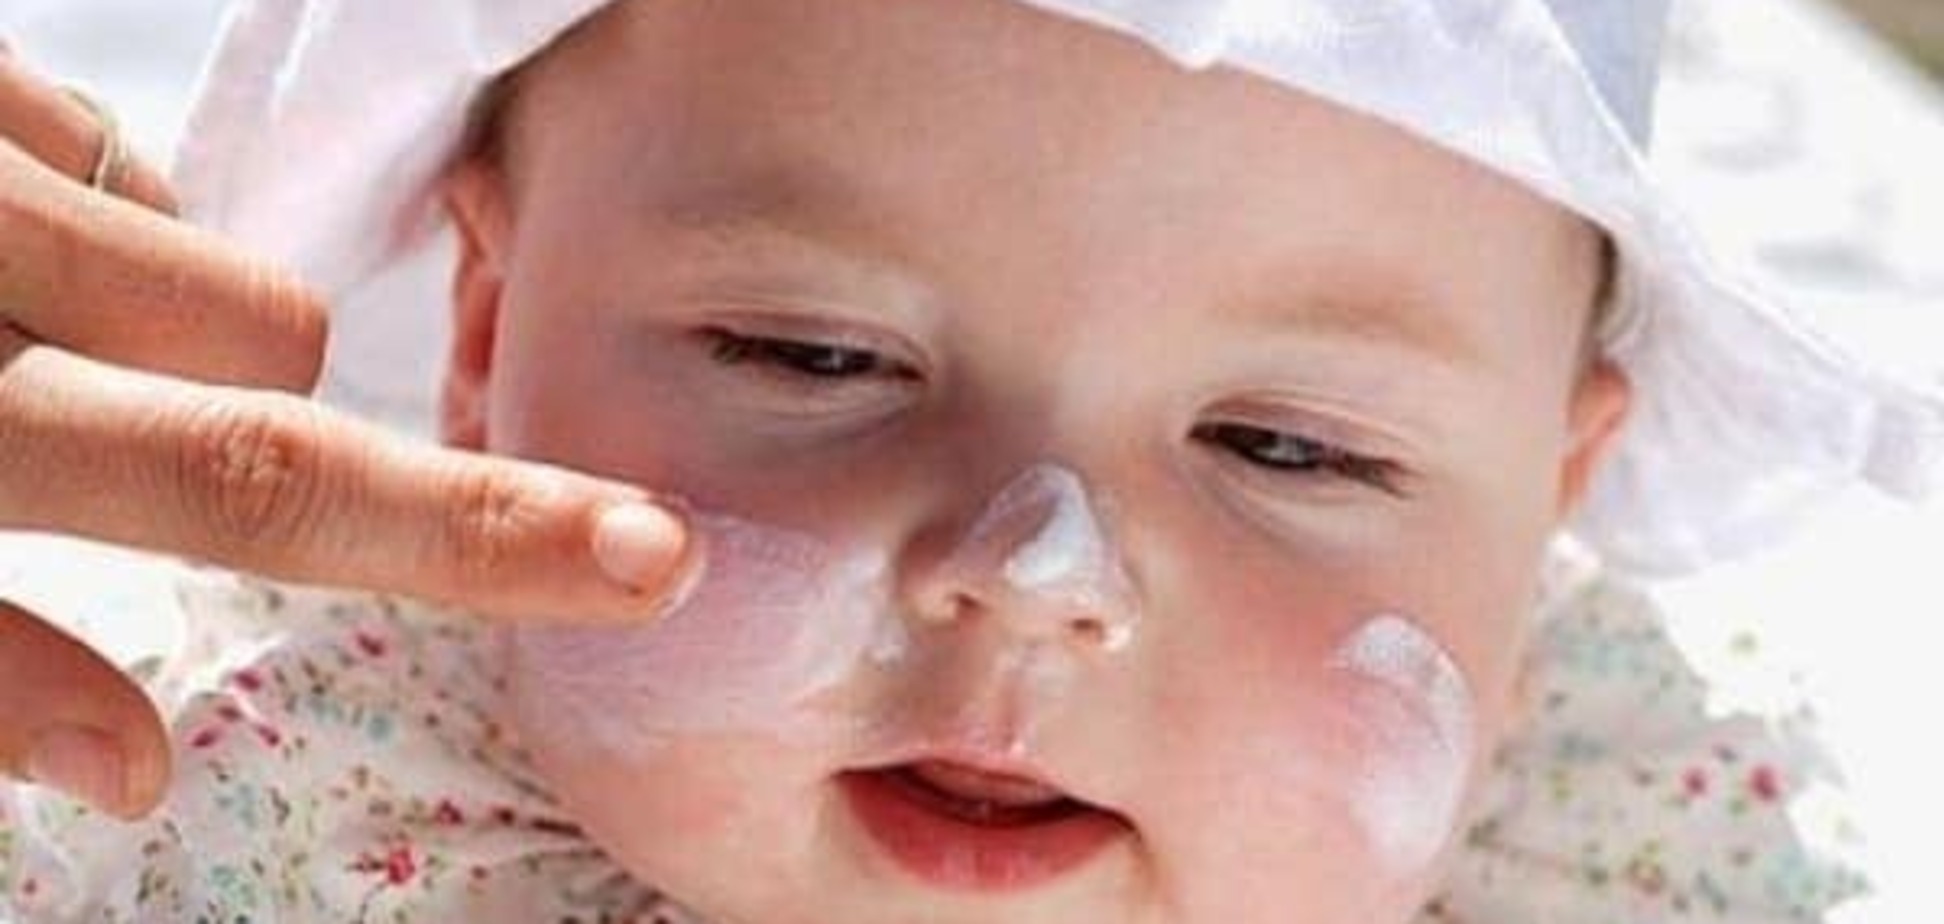 Як правильно вибрати сонцезахисний крем для дітей?